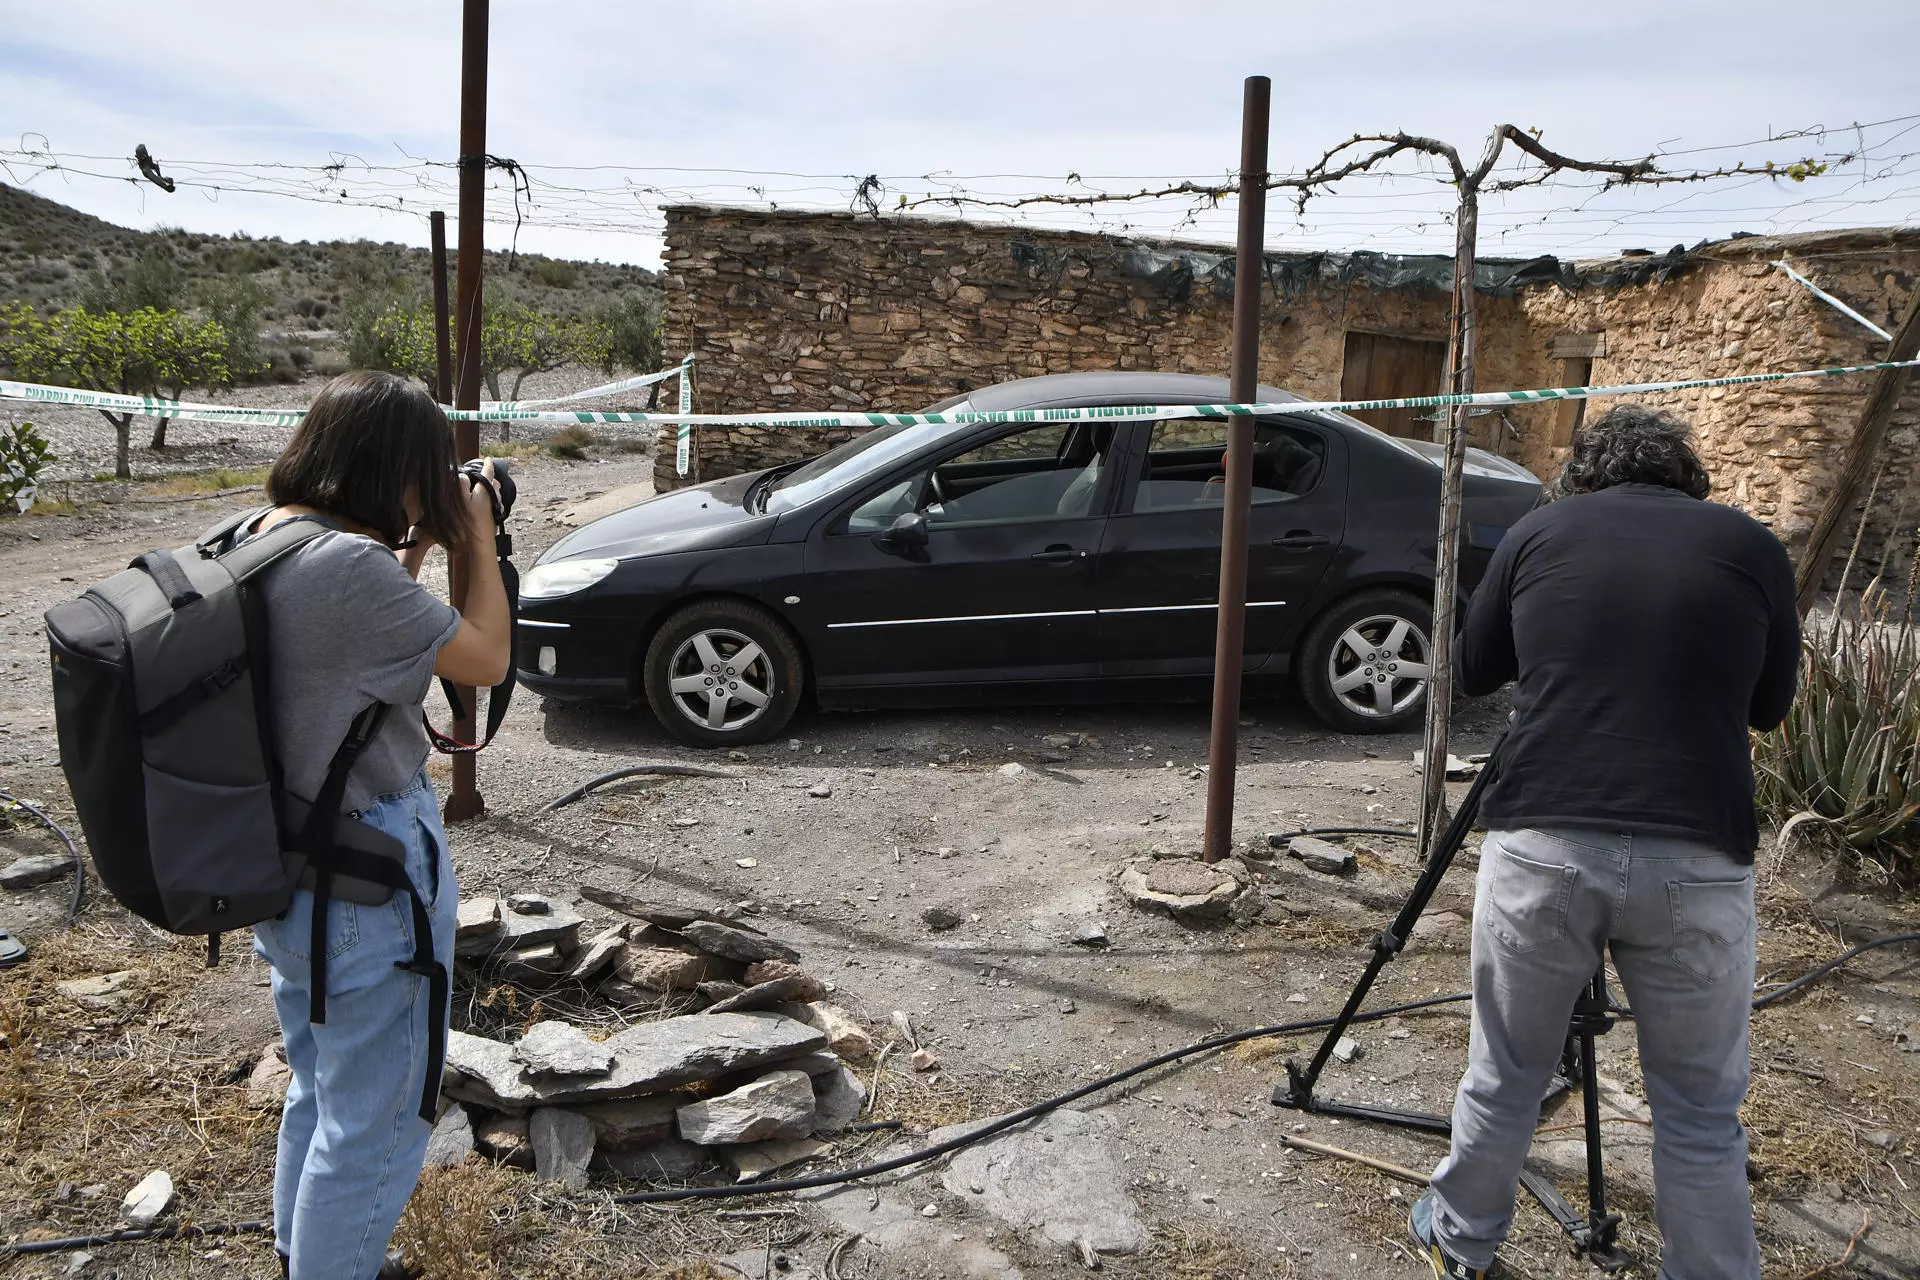 Cortijo en Las Alcubillas, una pedanía cuya mitad de territorio corresponde a Gérgal (Almería) donde han sido encontrados los cuerpos de las niñas. — Carlos Barba / EFE